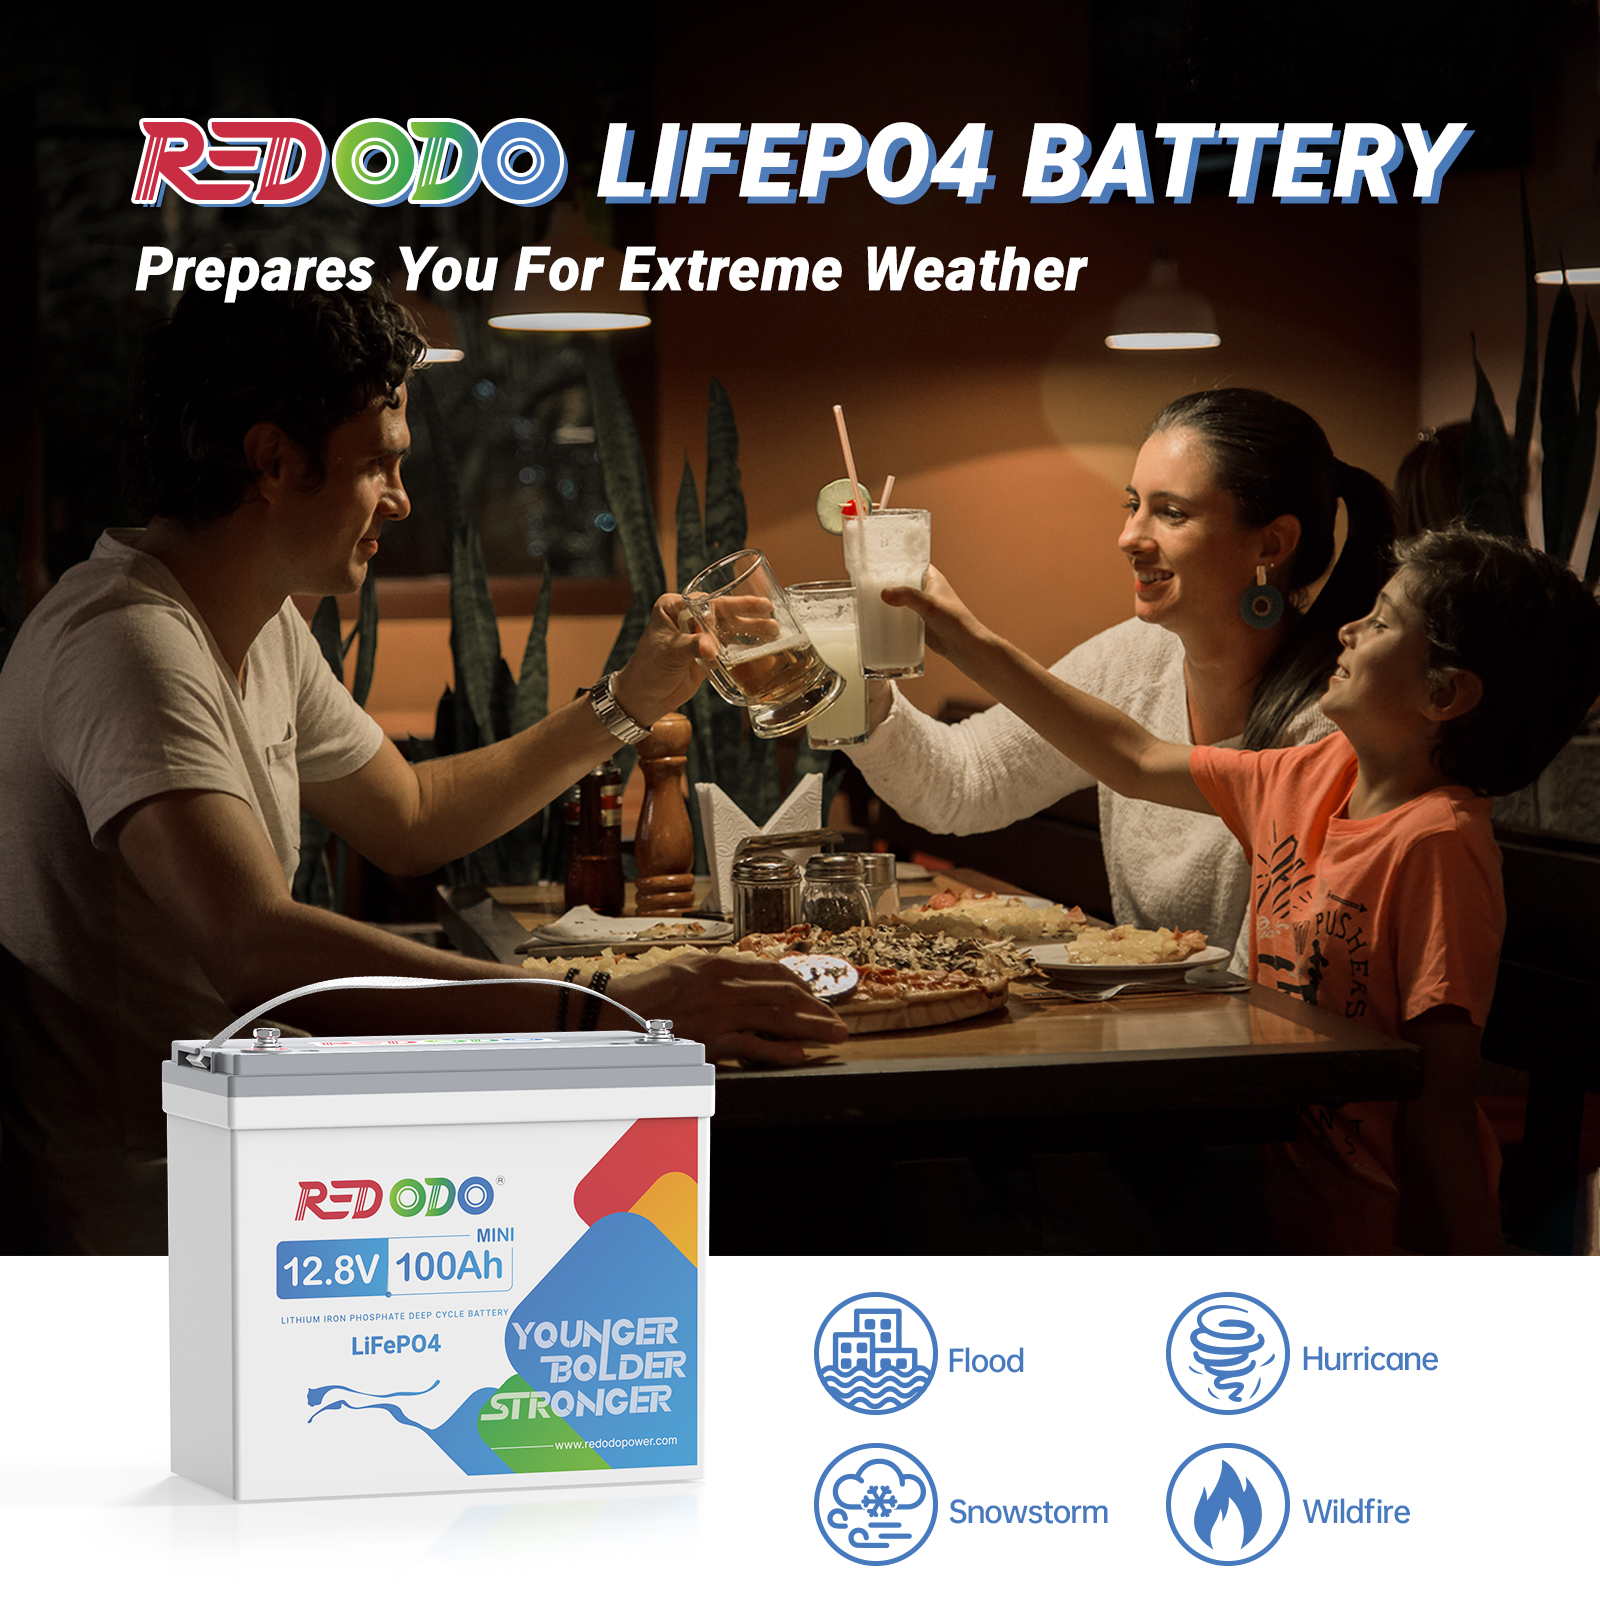 【Like New】Redodo 12V 100Ah Mini LiFePO4 battery | 1.28kWh & 1.28kW Redodo